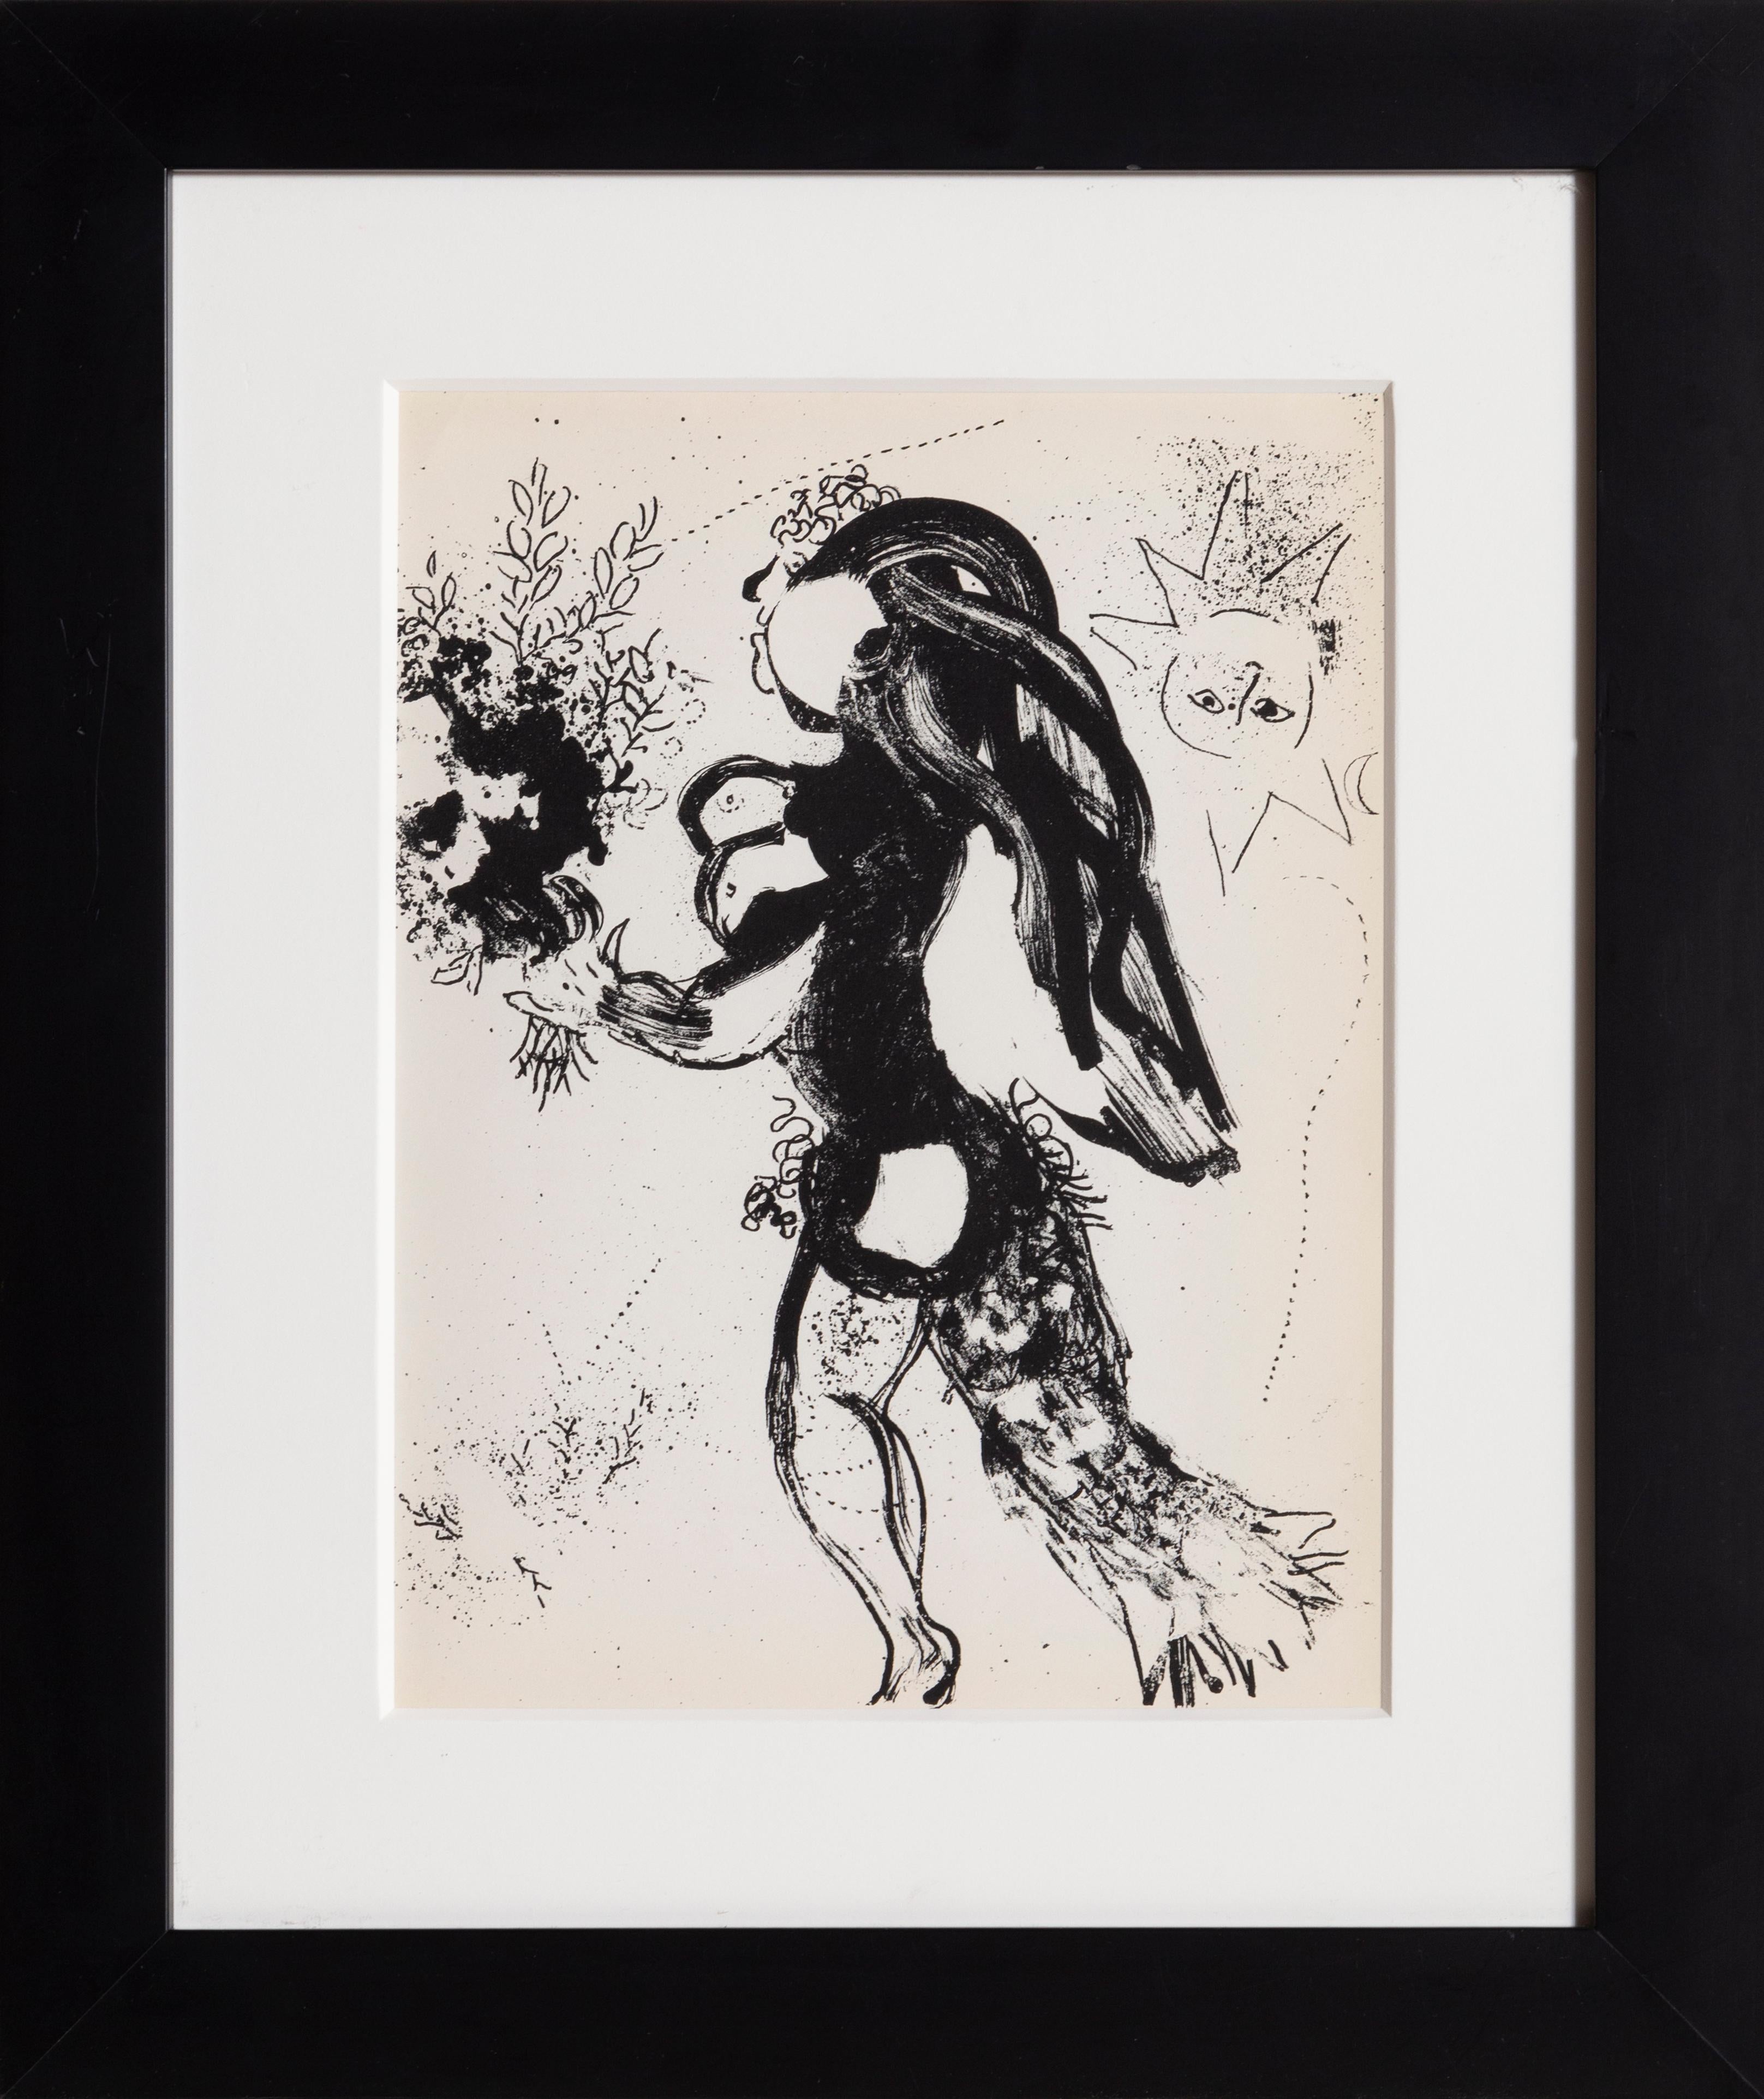 Ein Abdruck aus dem Buch mit den Lithografien von Marc Chagall (Russe, 1887-1985). Veröffentlicht 1960 von Éditions André Sauret, Monte-Carlo. Von 1960 bis 1974 schuf Chagall 28 Lithografien für die sechs Bände des Catalogue Raisonné der